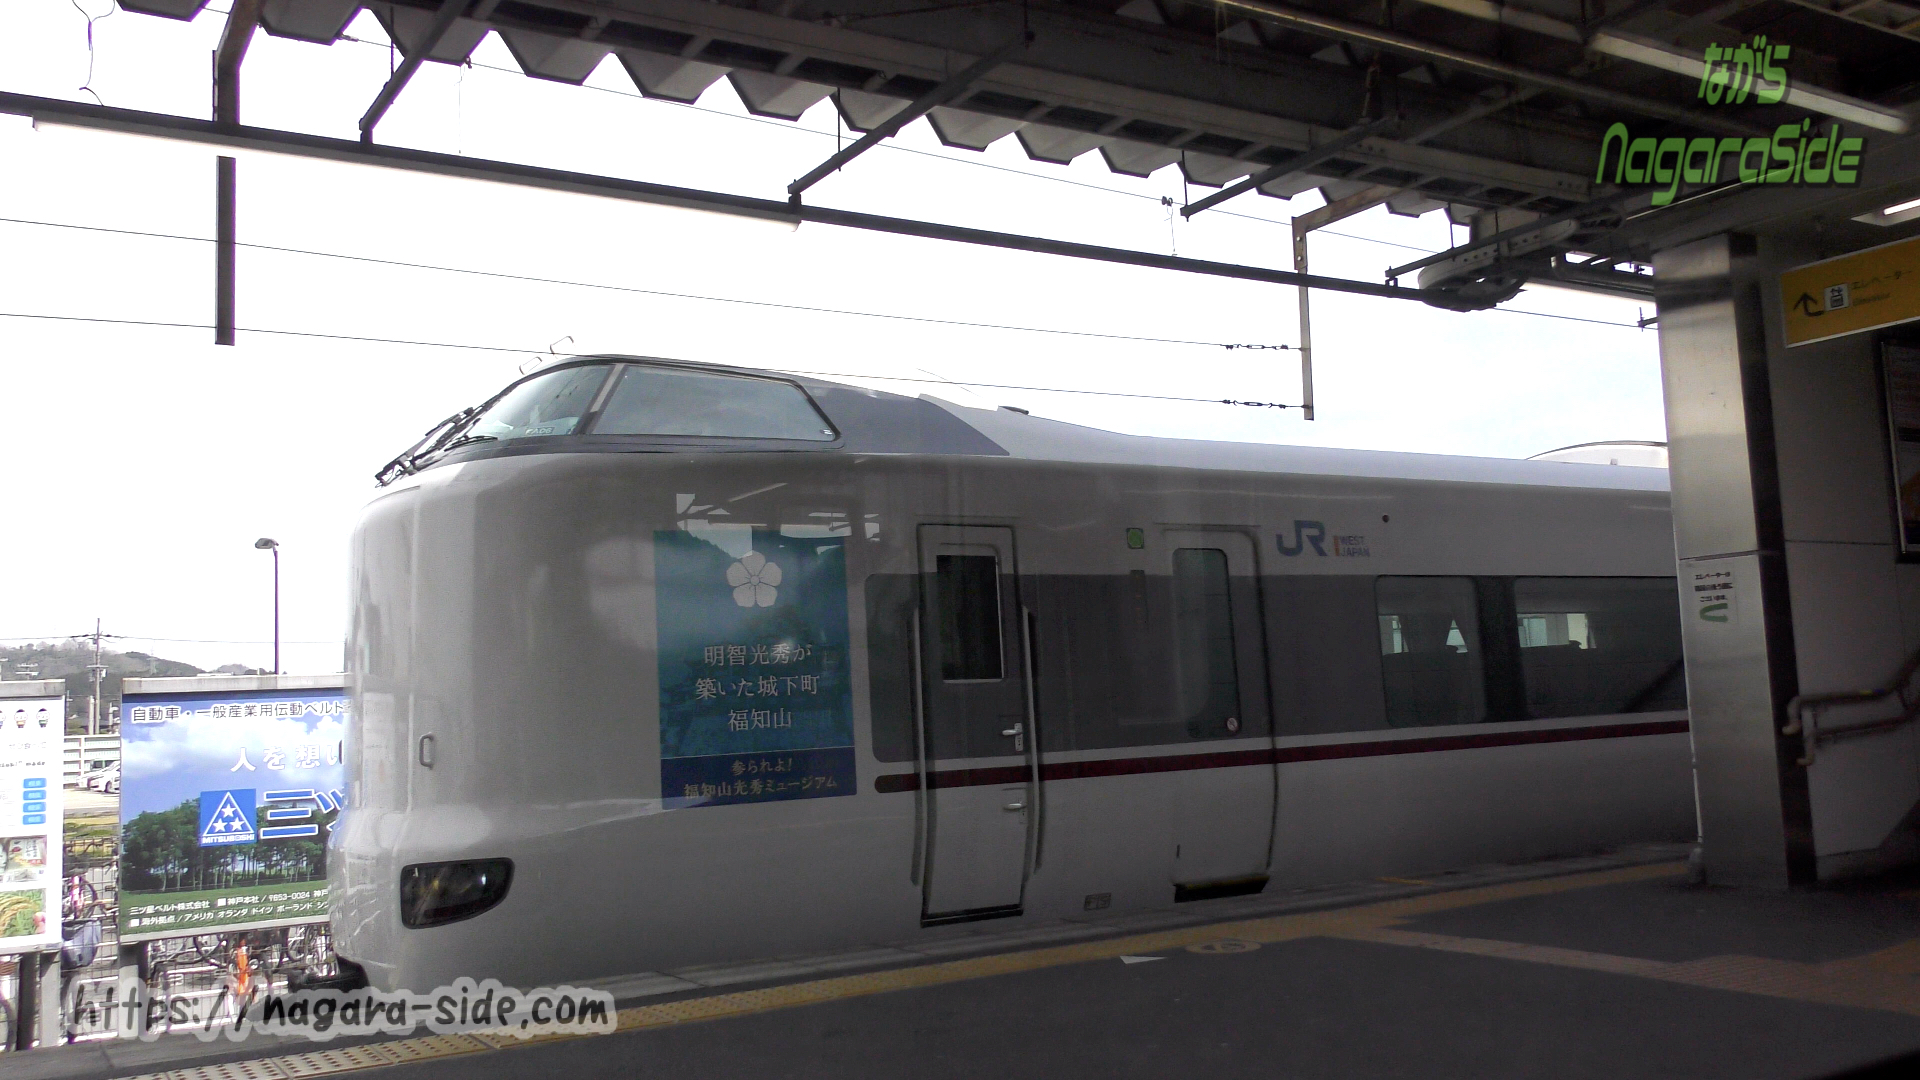 綾部駅で舞鶴線快速と対面接続を図る特急はしだて